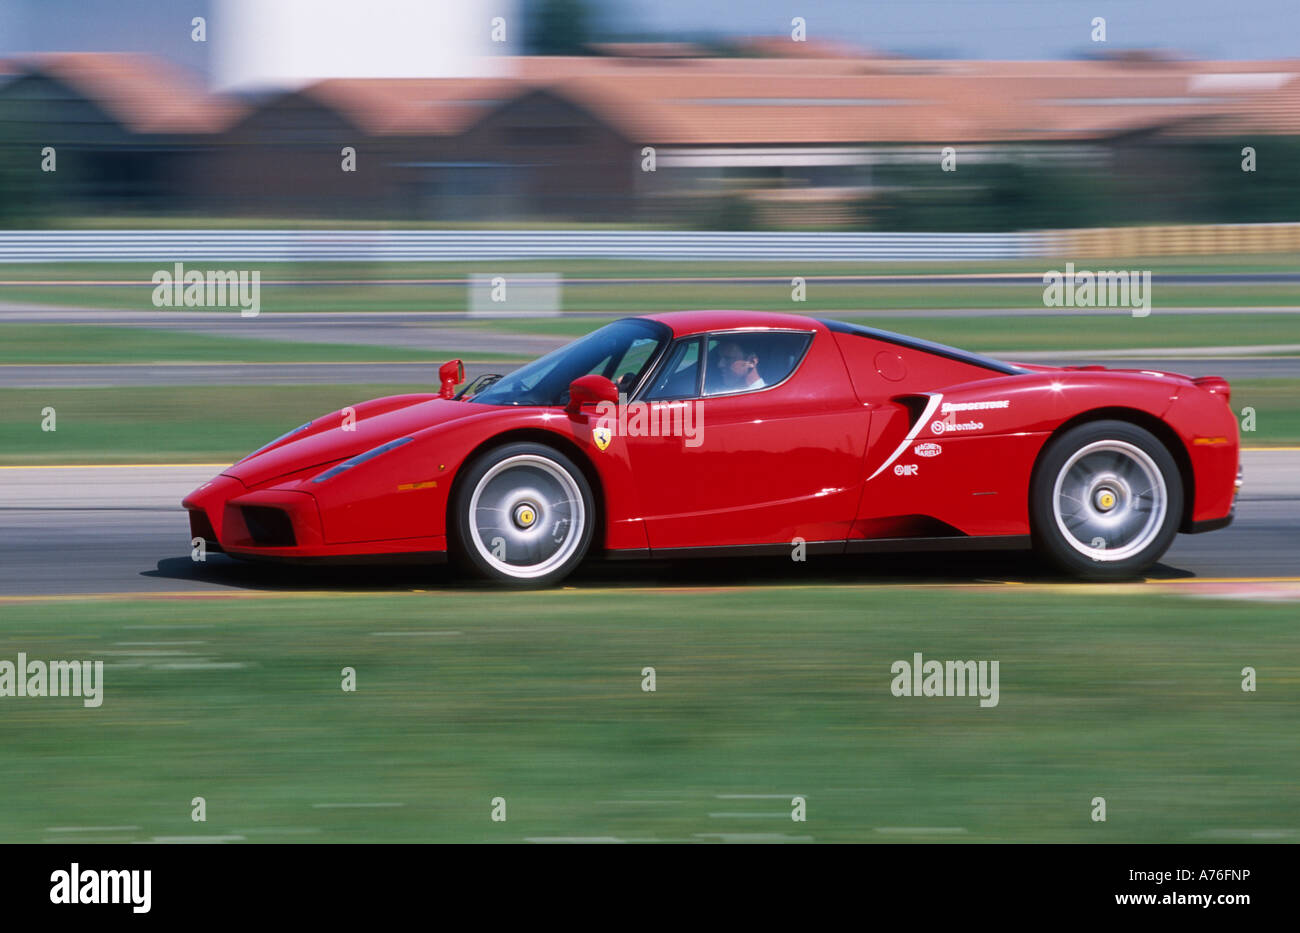 Red Enzo Ferrari driven at speed around Ferrari test track at Fiorano near Maranello Italy Stock Photo